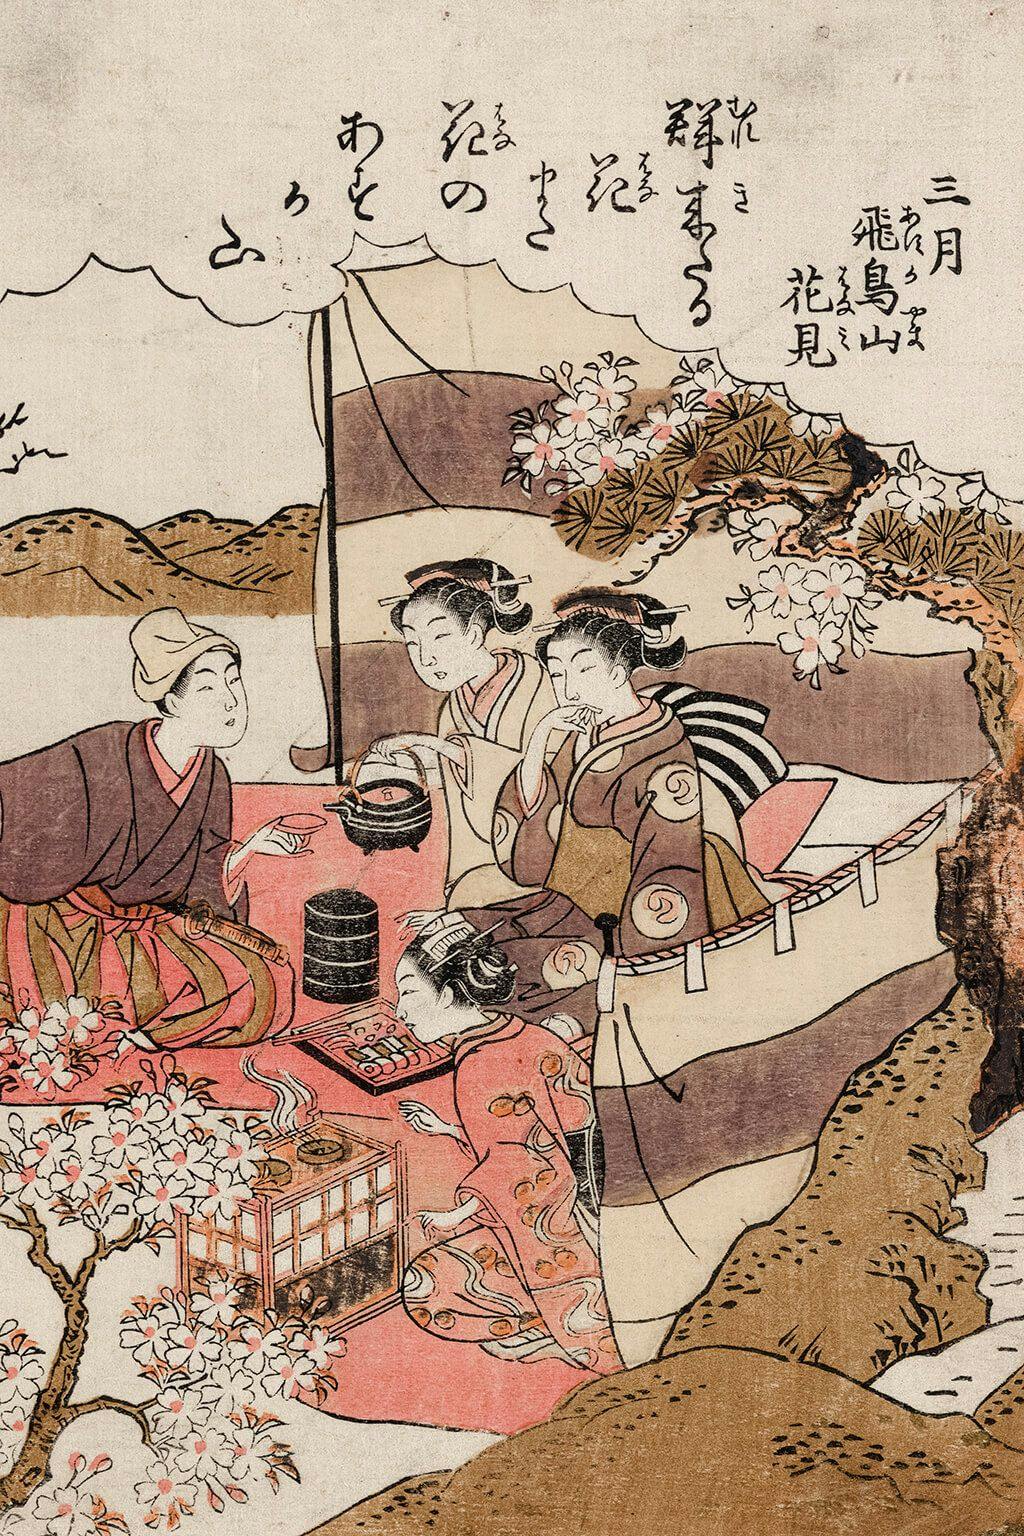 “Yayoi asukayama hanami” (Third Lunar Month, Blossom Viewing at Asuka Hill) woodcut print by Kitao Shigemasa, between 1772 and 1776, courtesy of the Library of Congress.